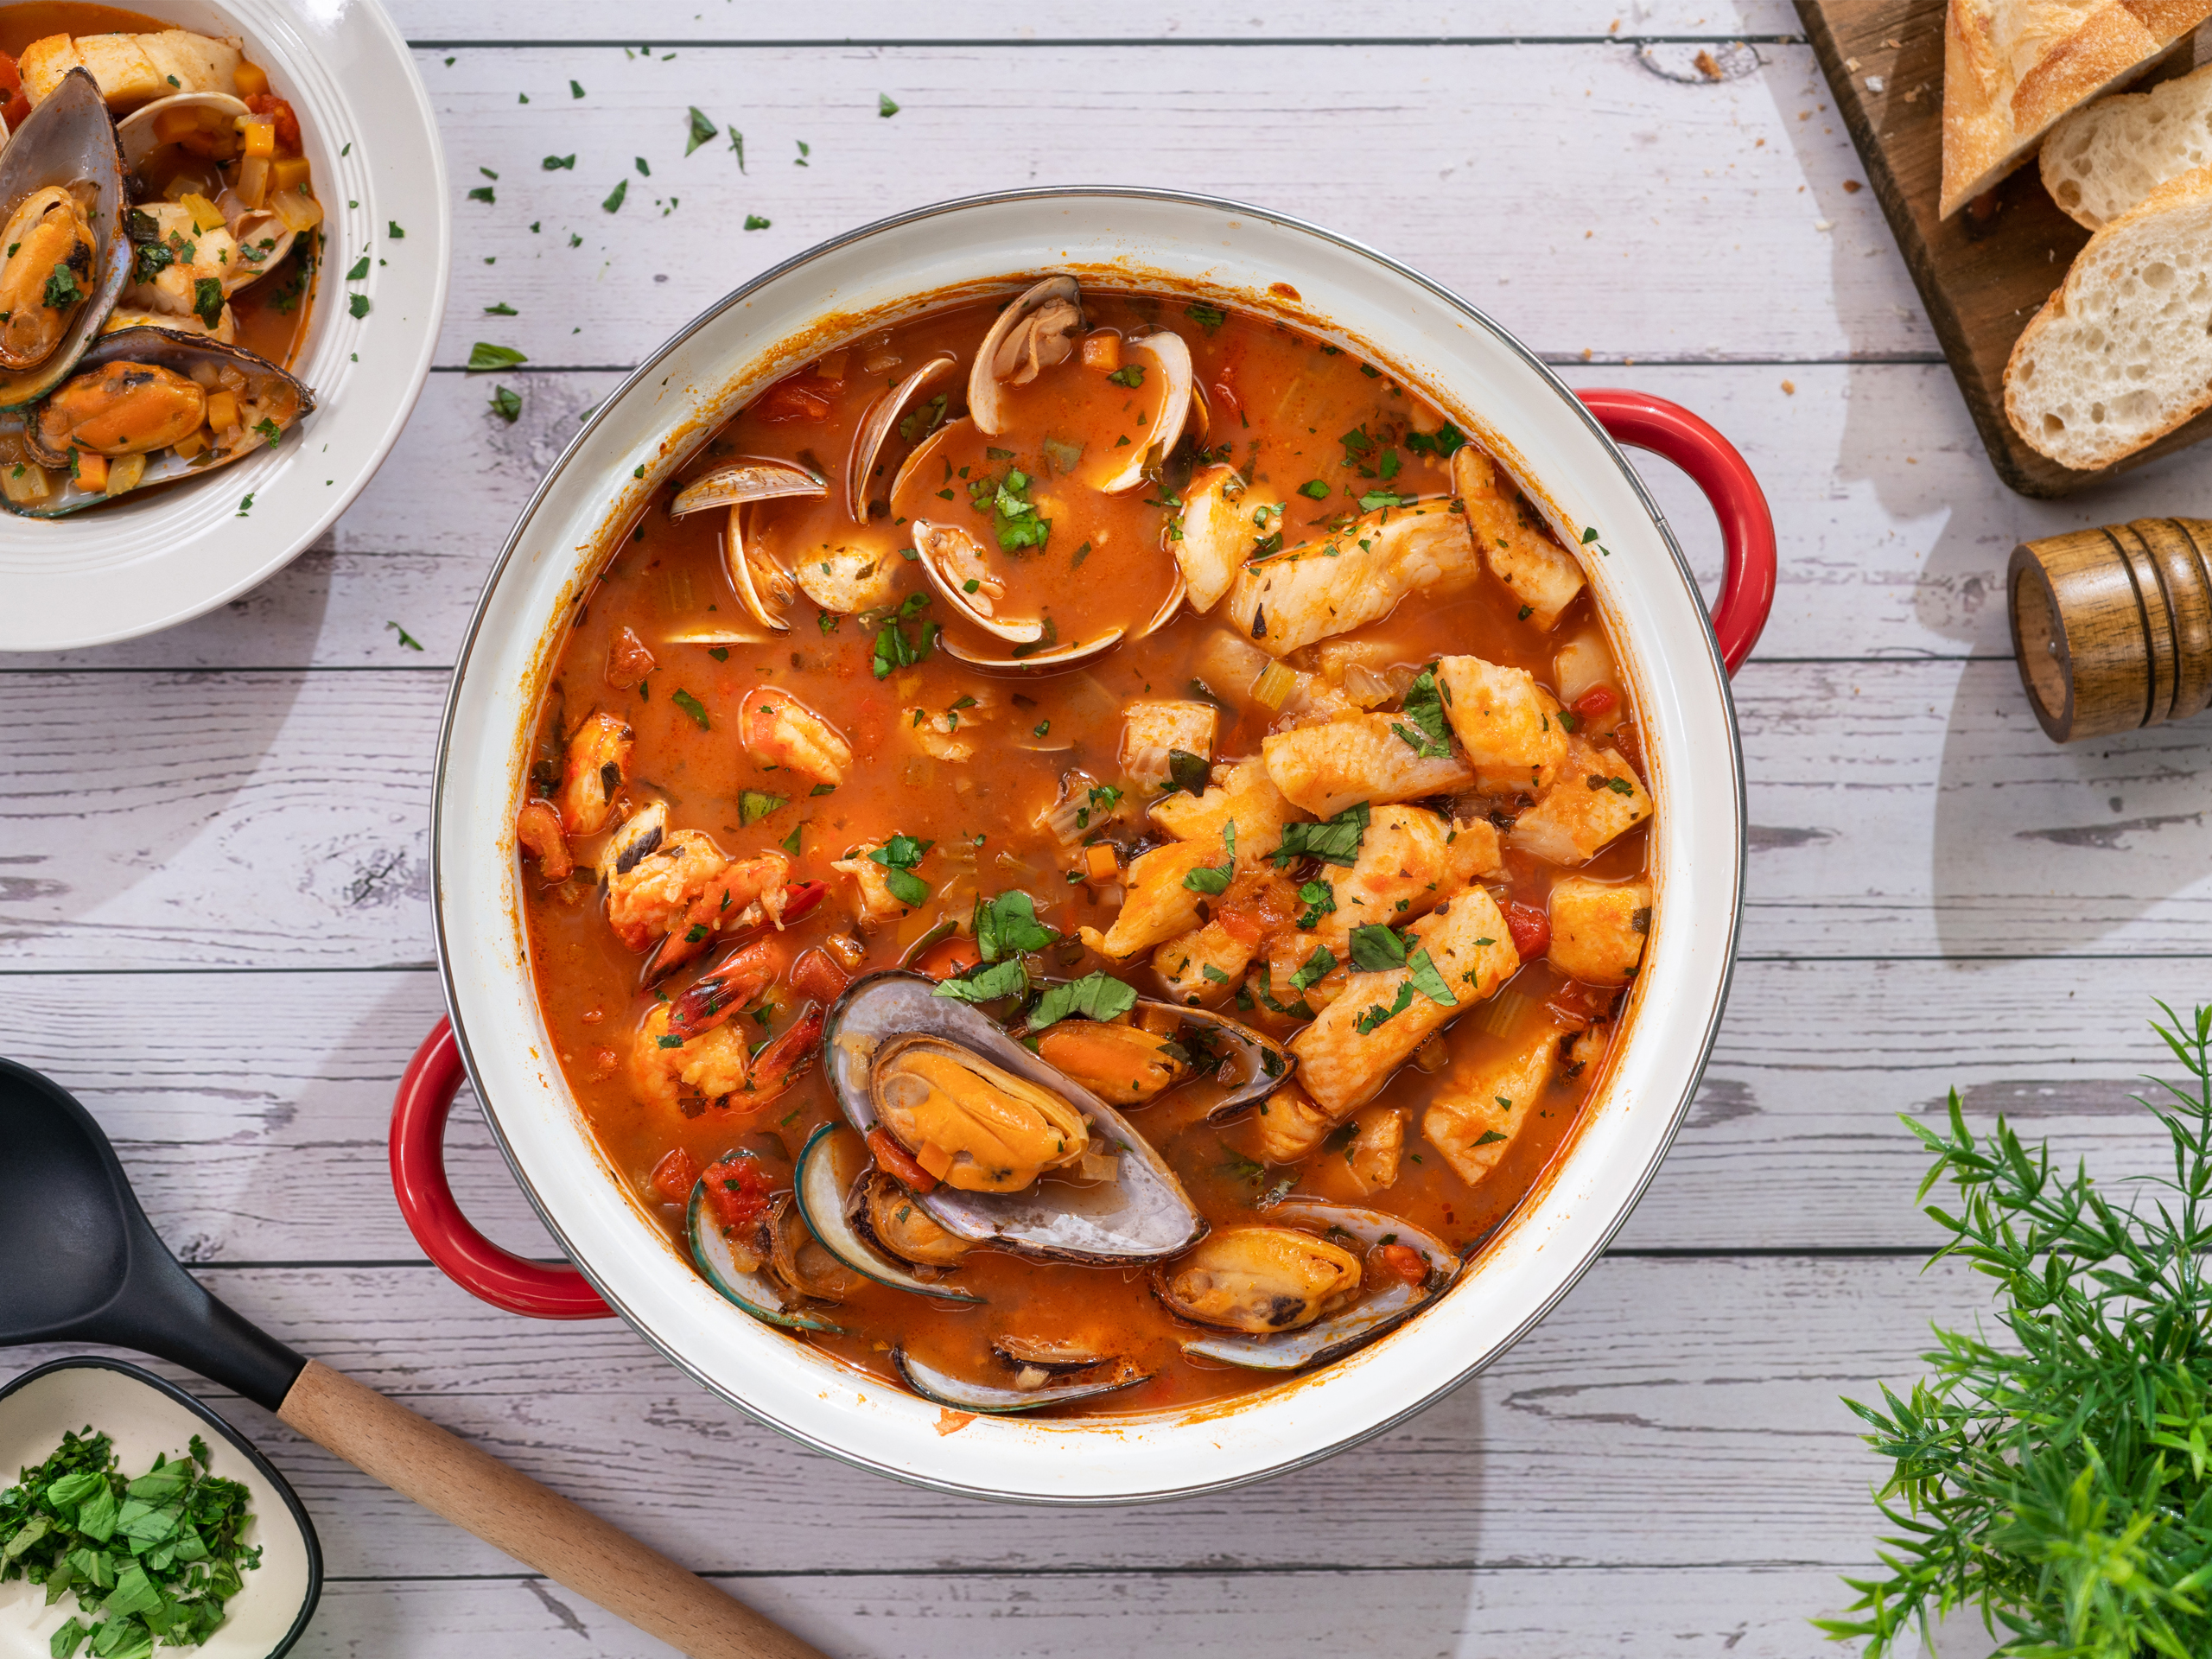 170 FOOD-Seafoods/Seashell Recipes ideas